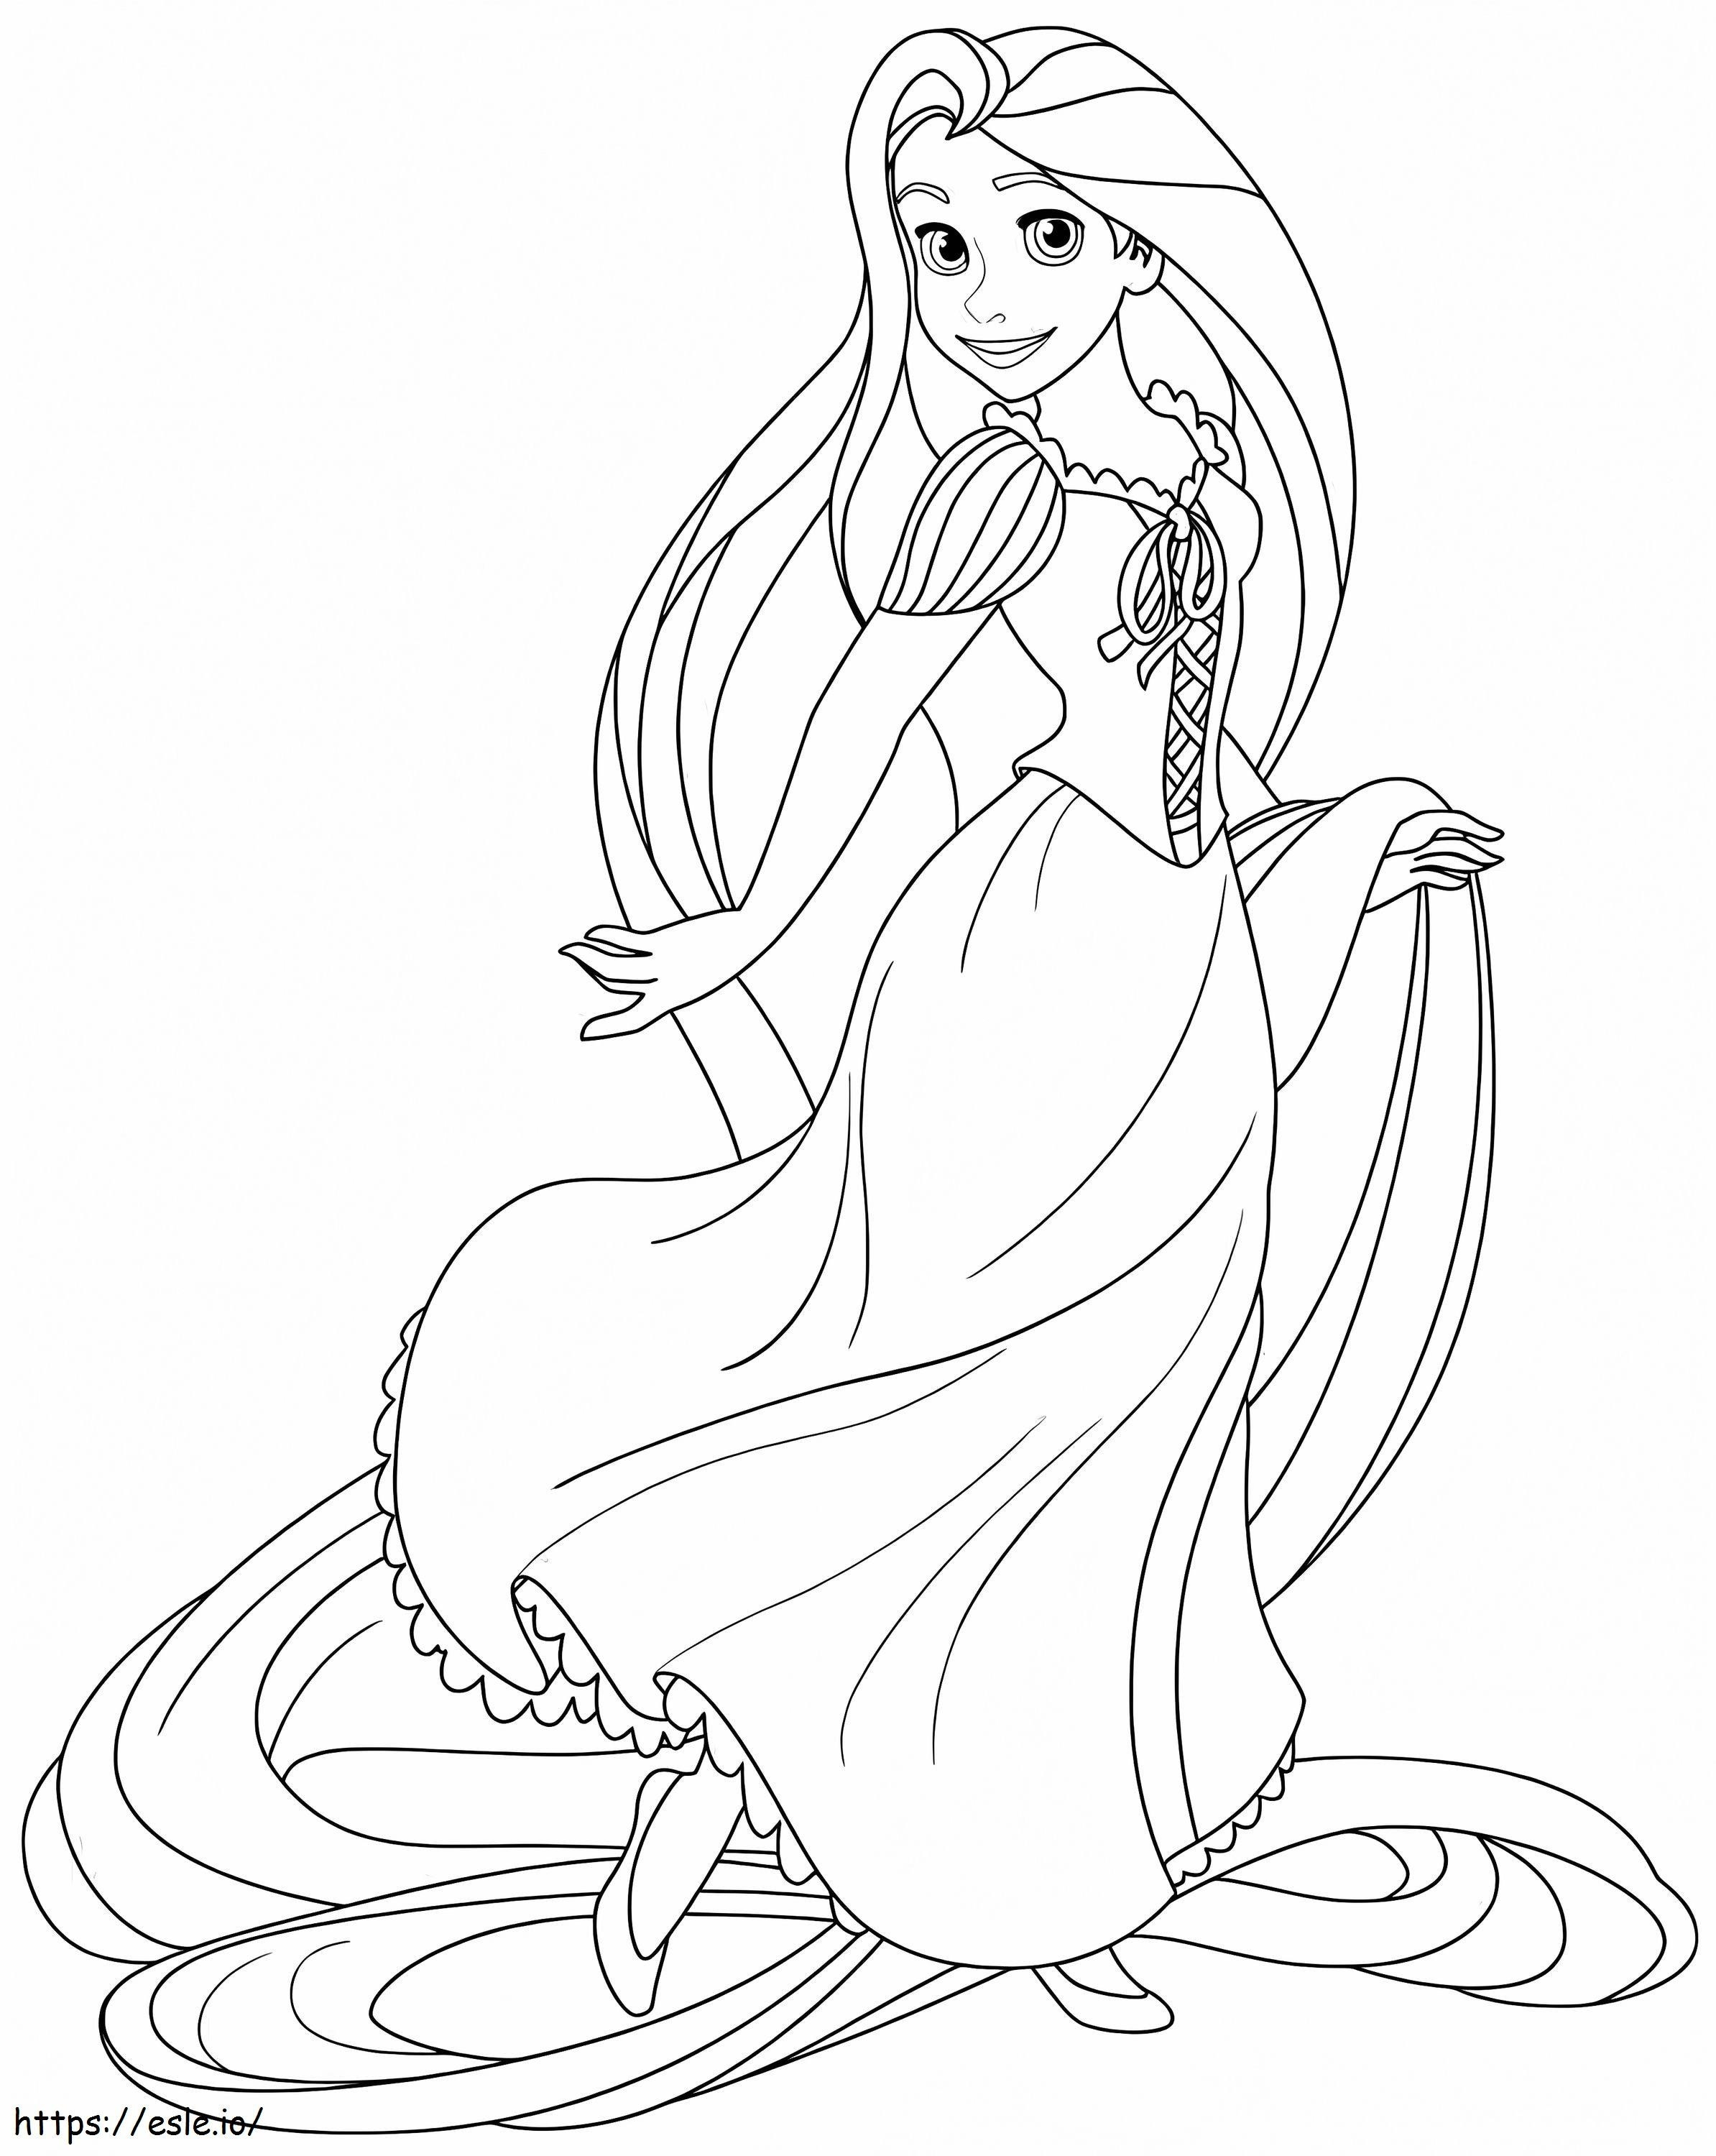 Cute Princess Rapunzel coloring page